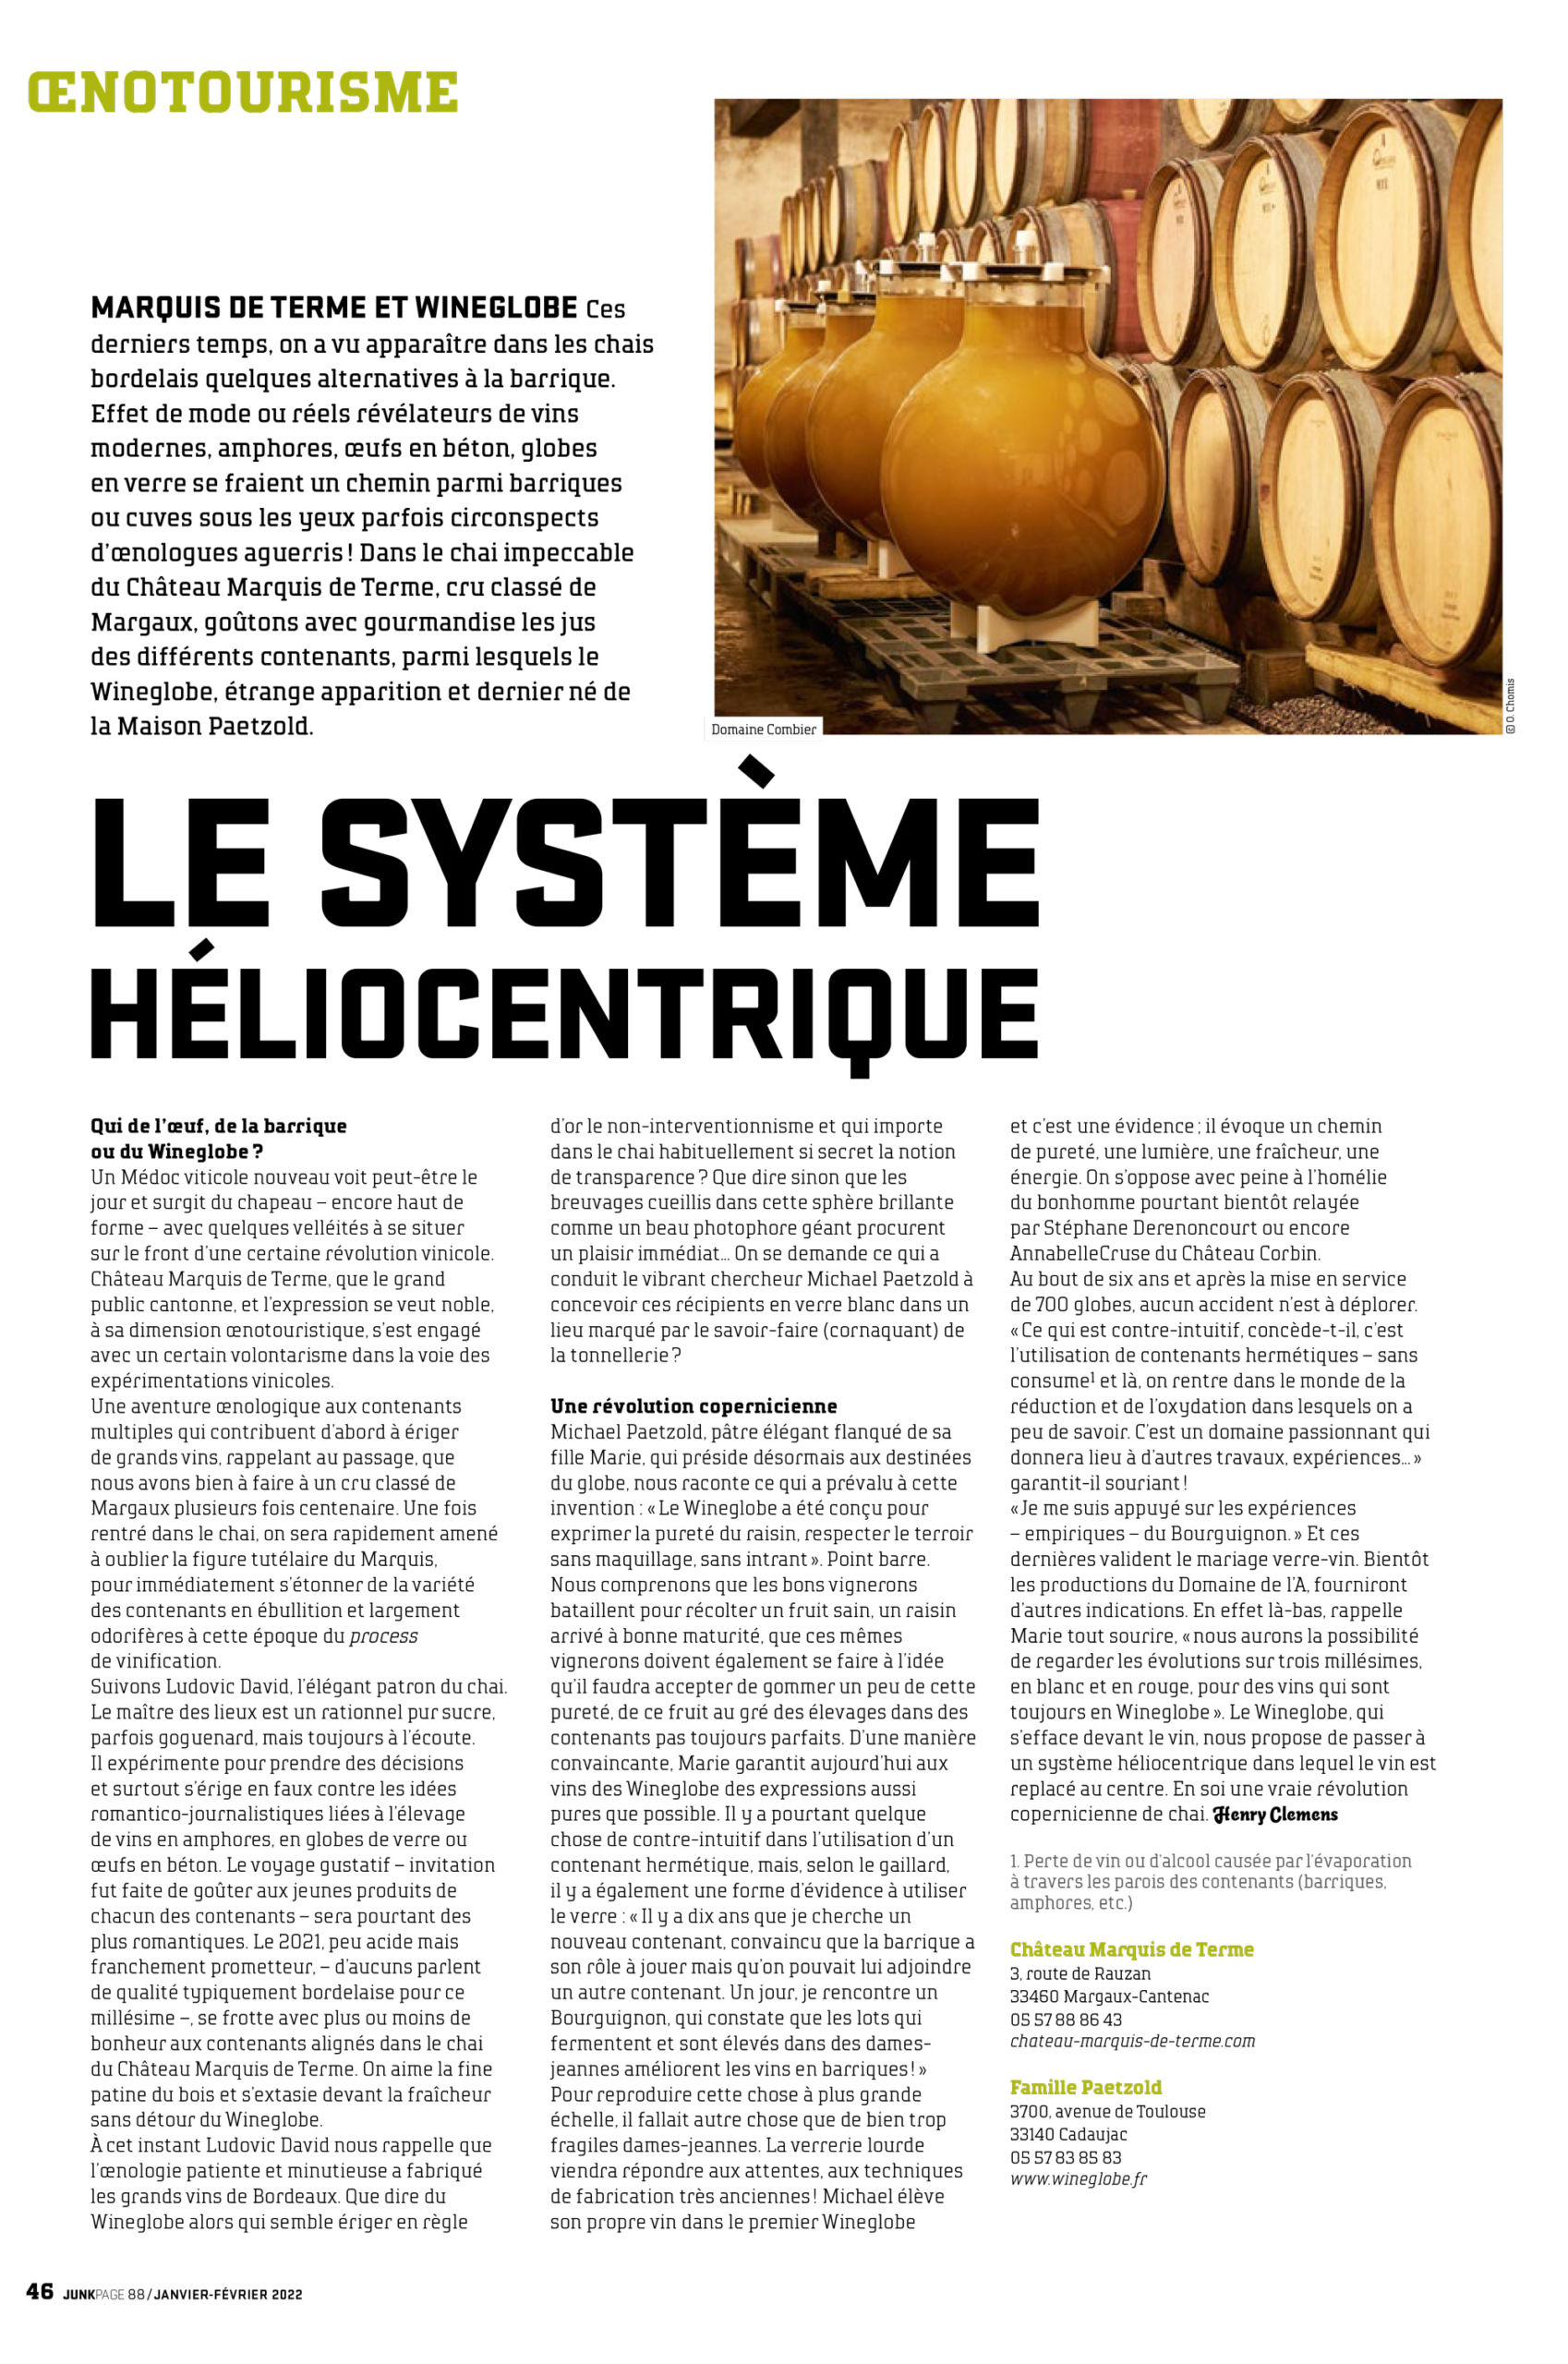 Wine globe Oenologues de France